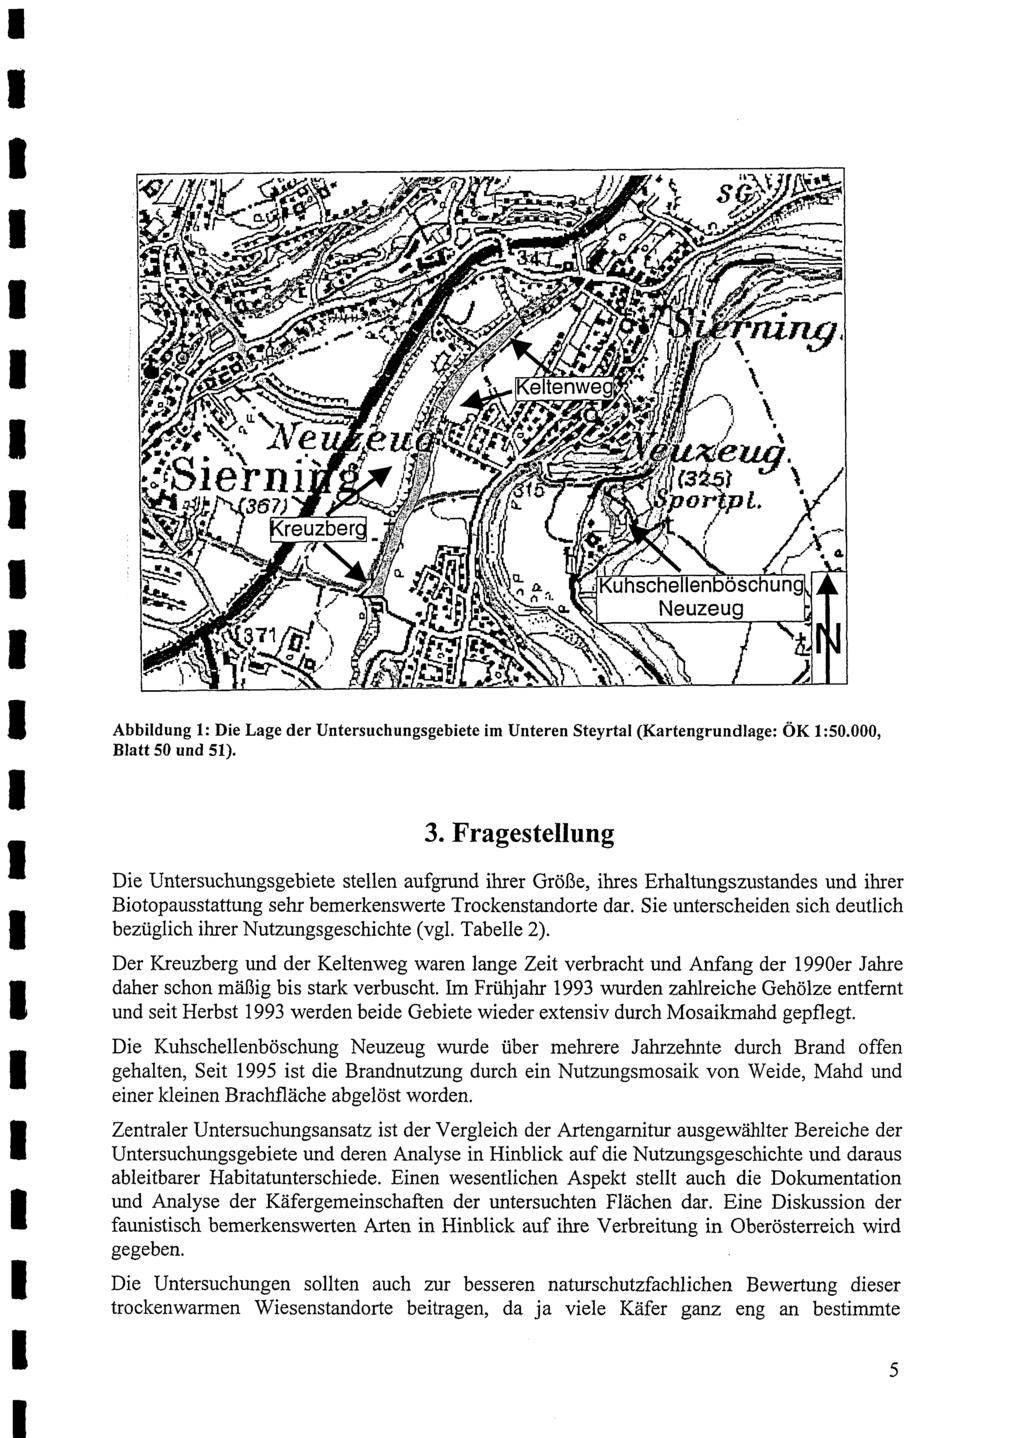 Abbildung 1: Die Lage der Untersuchungsgebiete im Unteren Steyrtal (Kartengrundlage: OK 1:50.000, Blatt 50 und 51). 3.